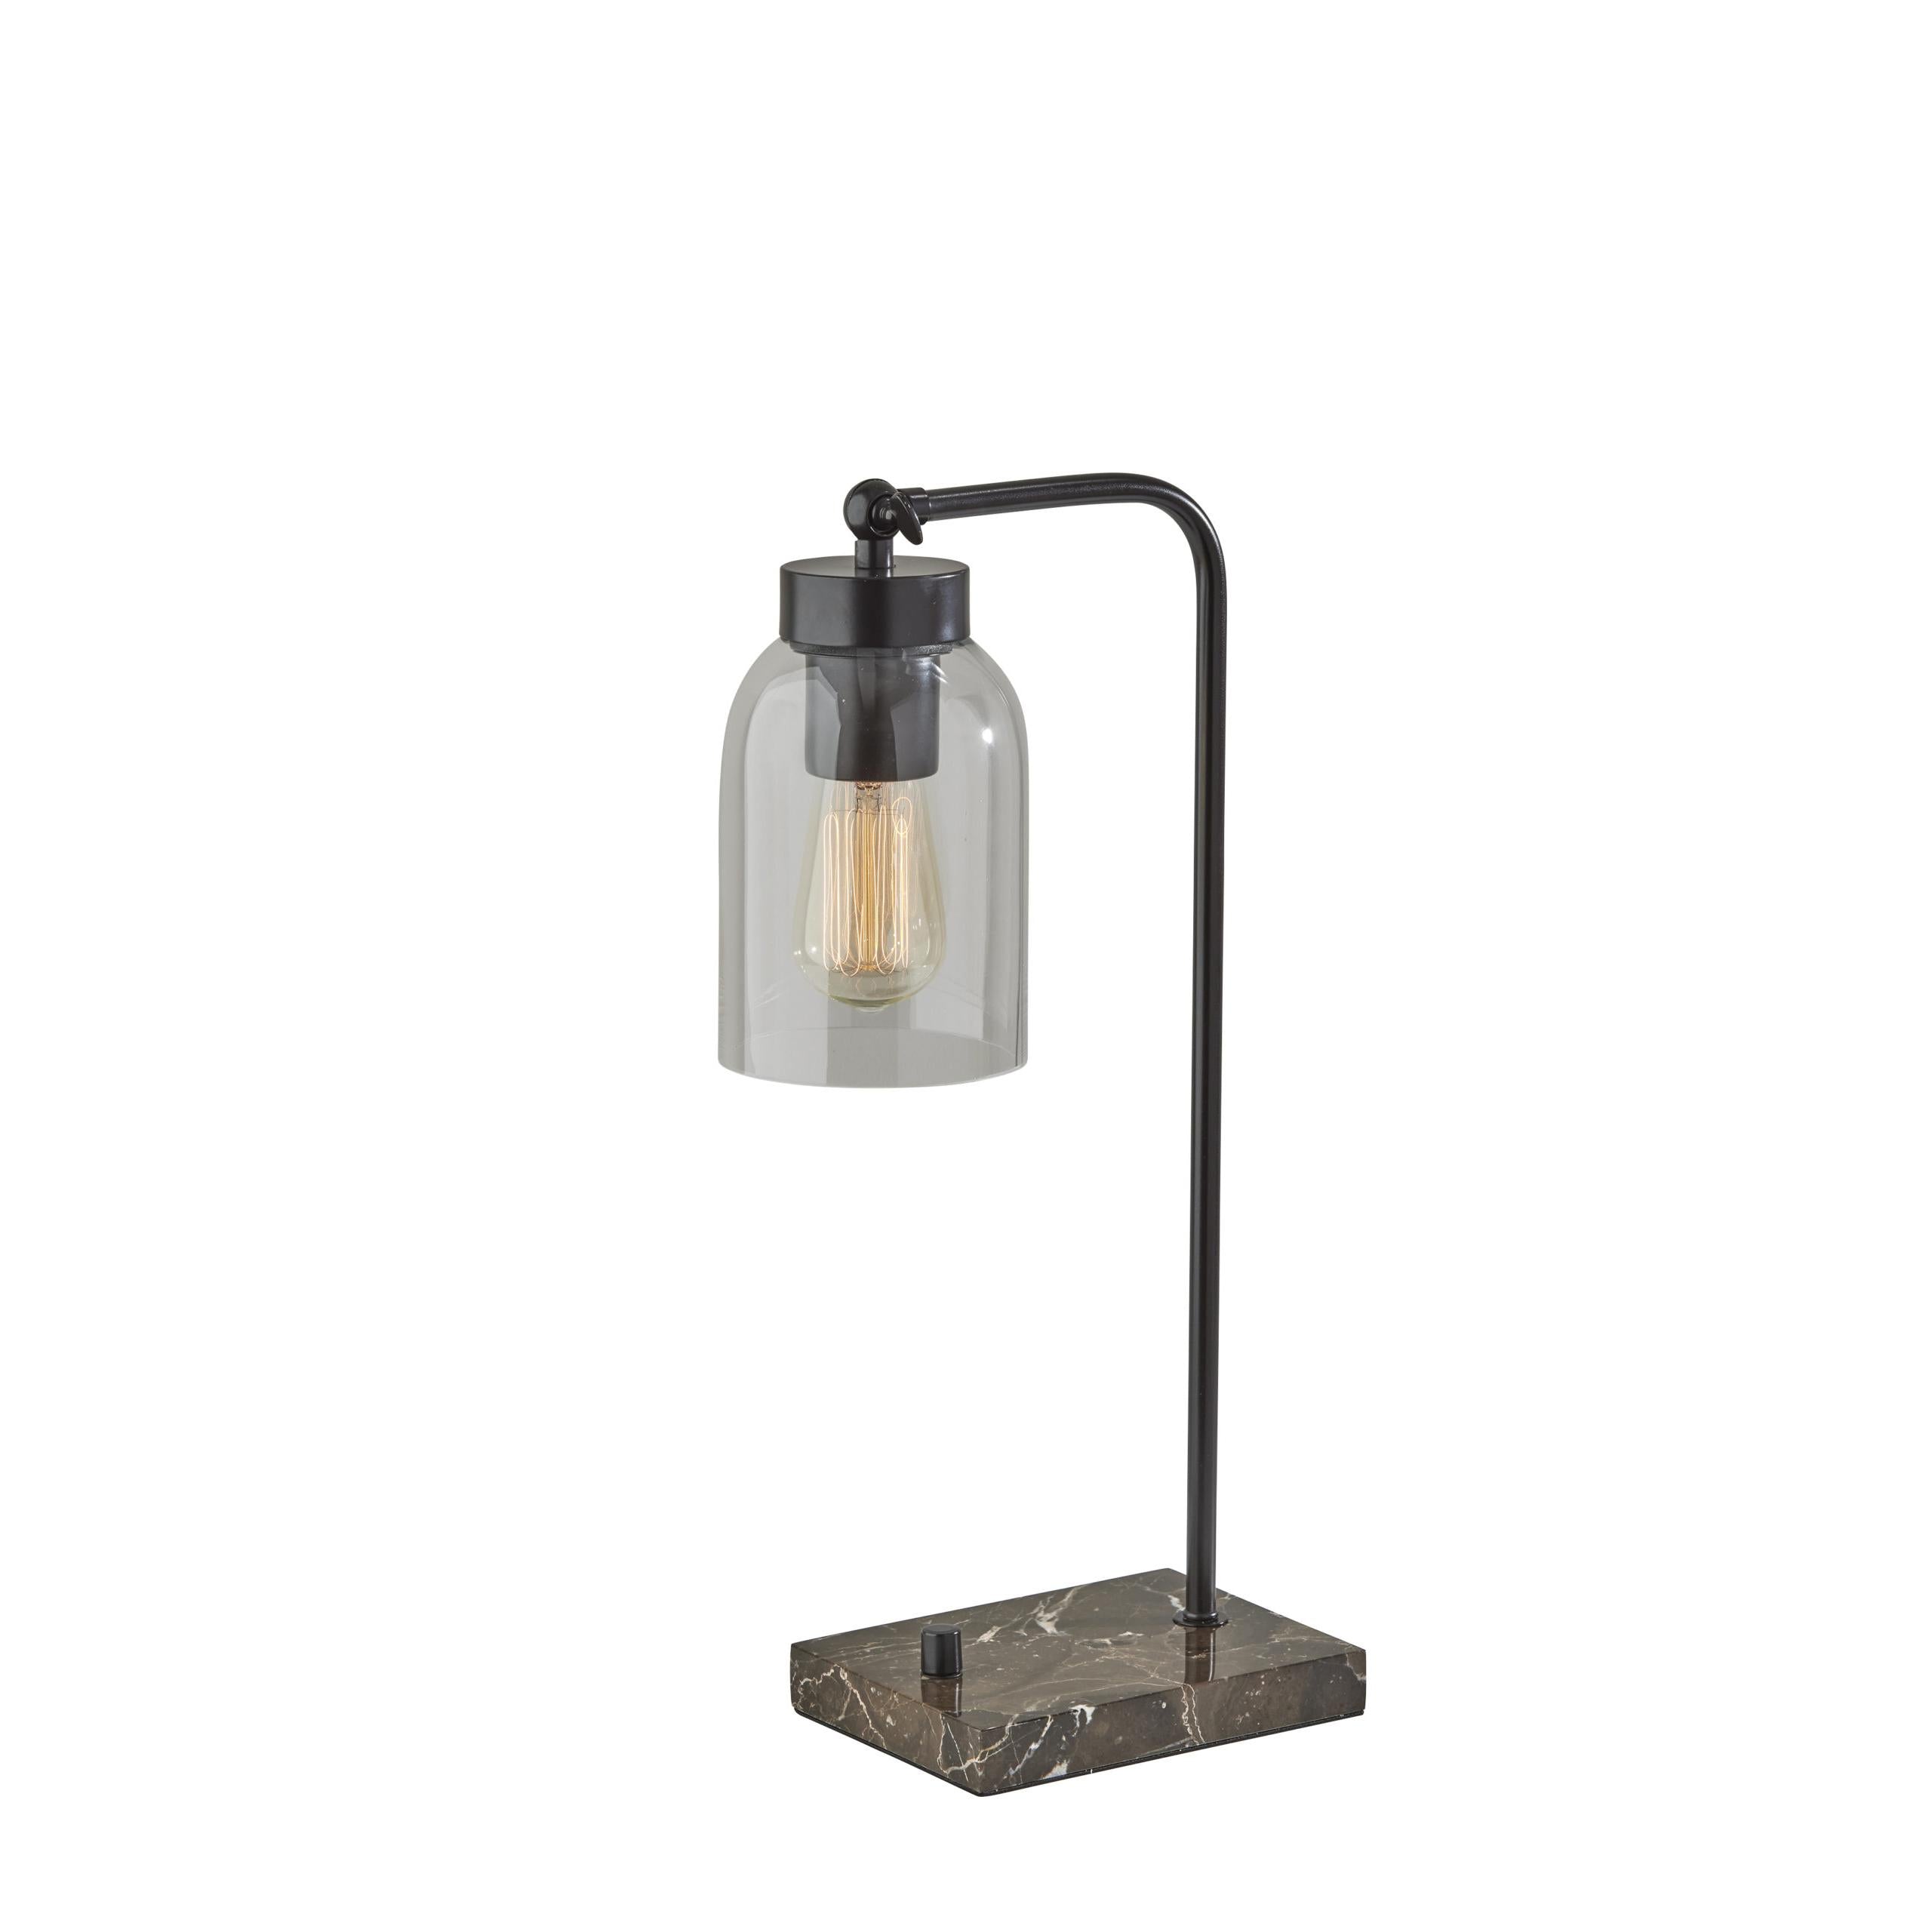 BRISTOL Lampe sur table Noir - 4288-01 | ADESSO